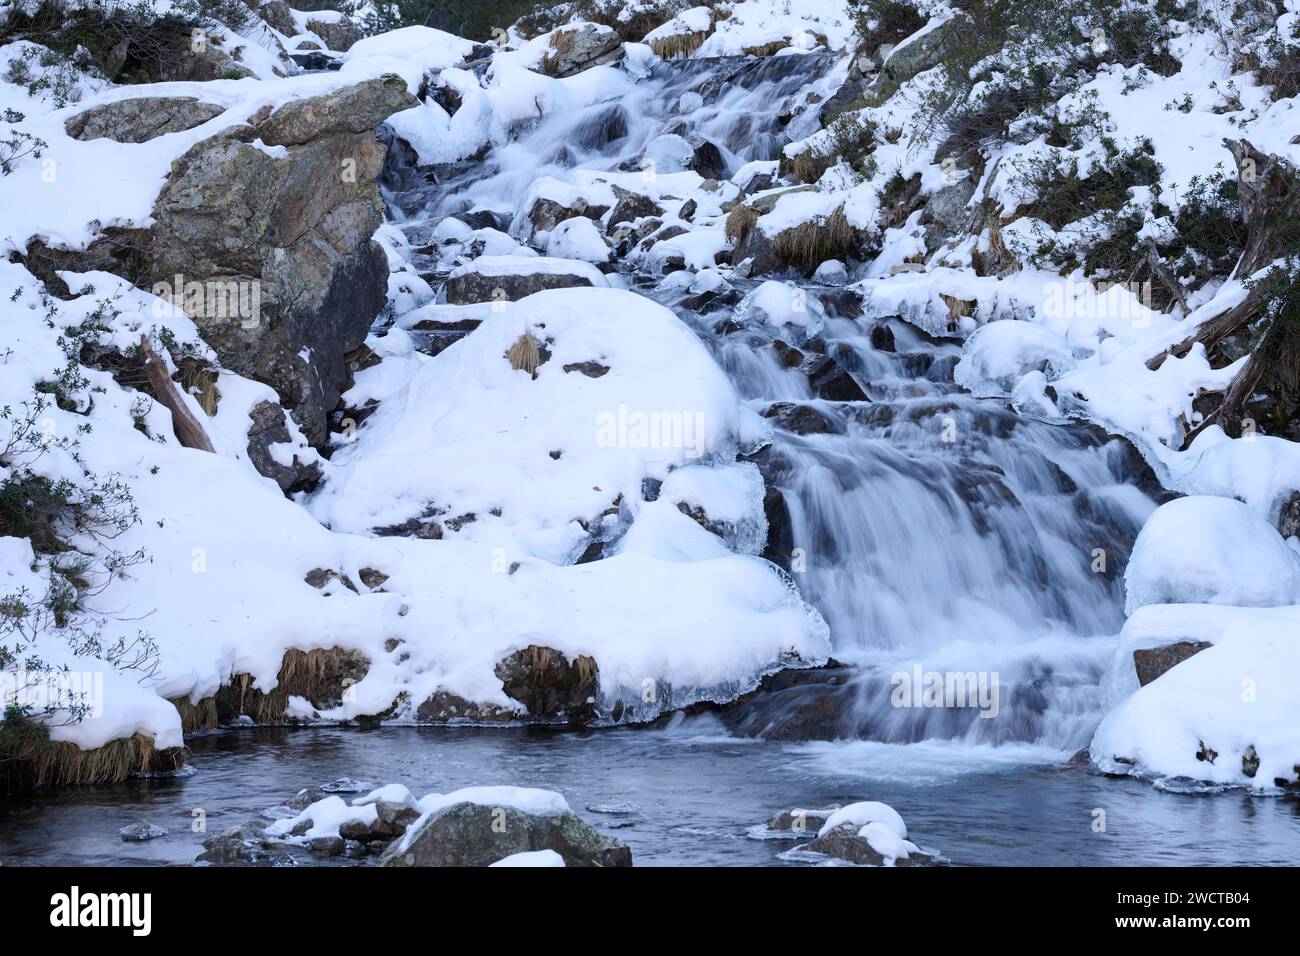 Eine ruhige Winterszene mit einem sanften Wasserfall, der zwischen schneebedeckten Felsen und kargem Grün fällt Stockfoto